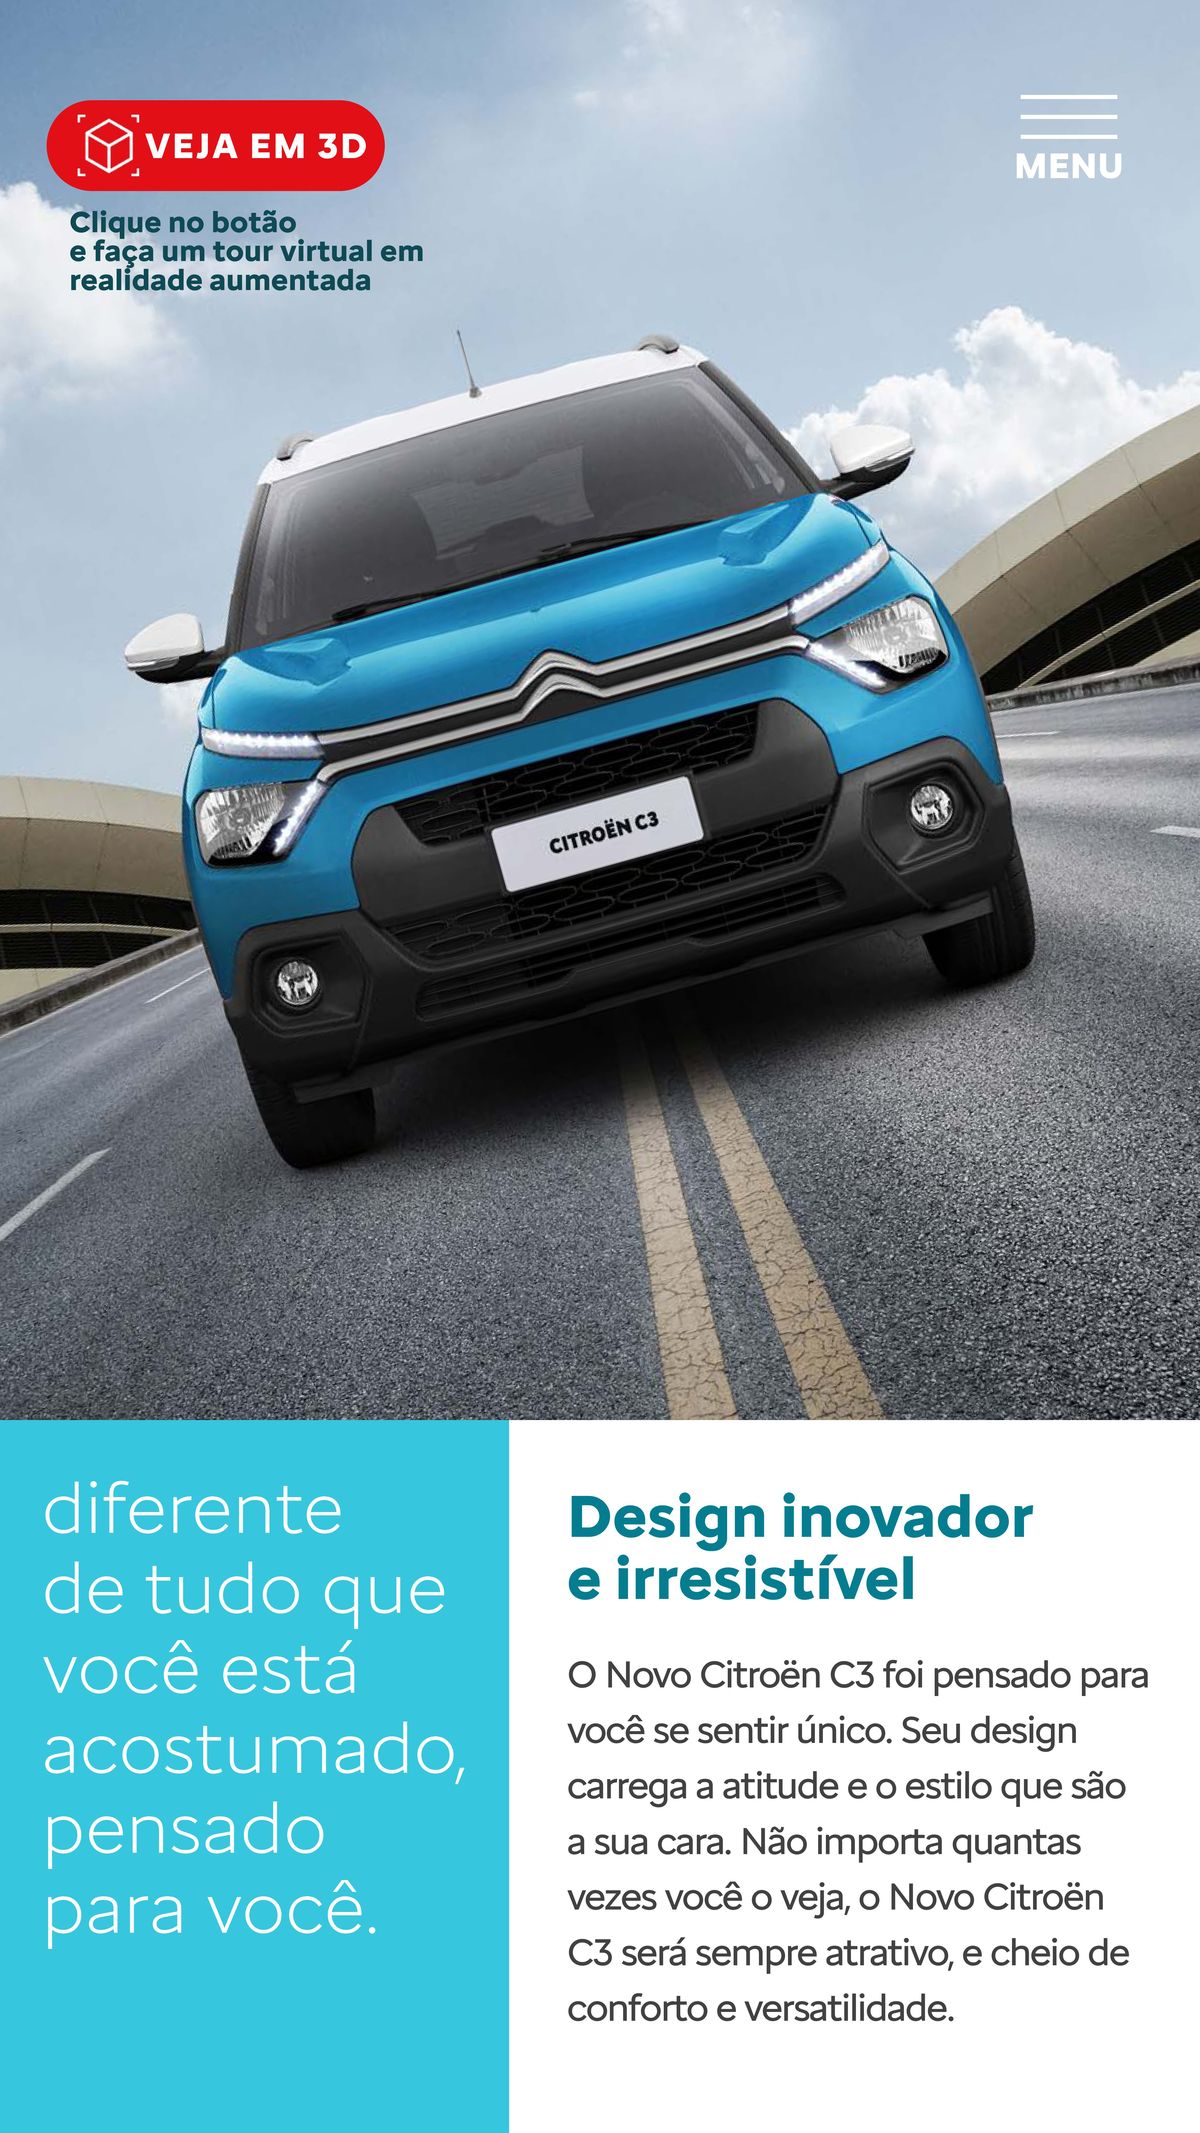 Novo Citroën C3 - Design inovador e irresistível